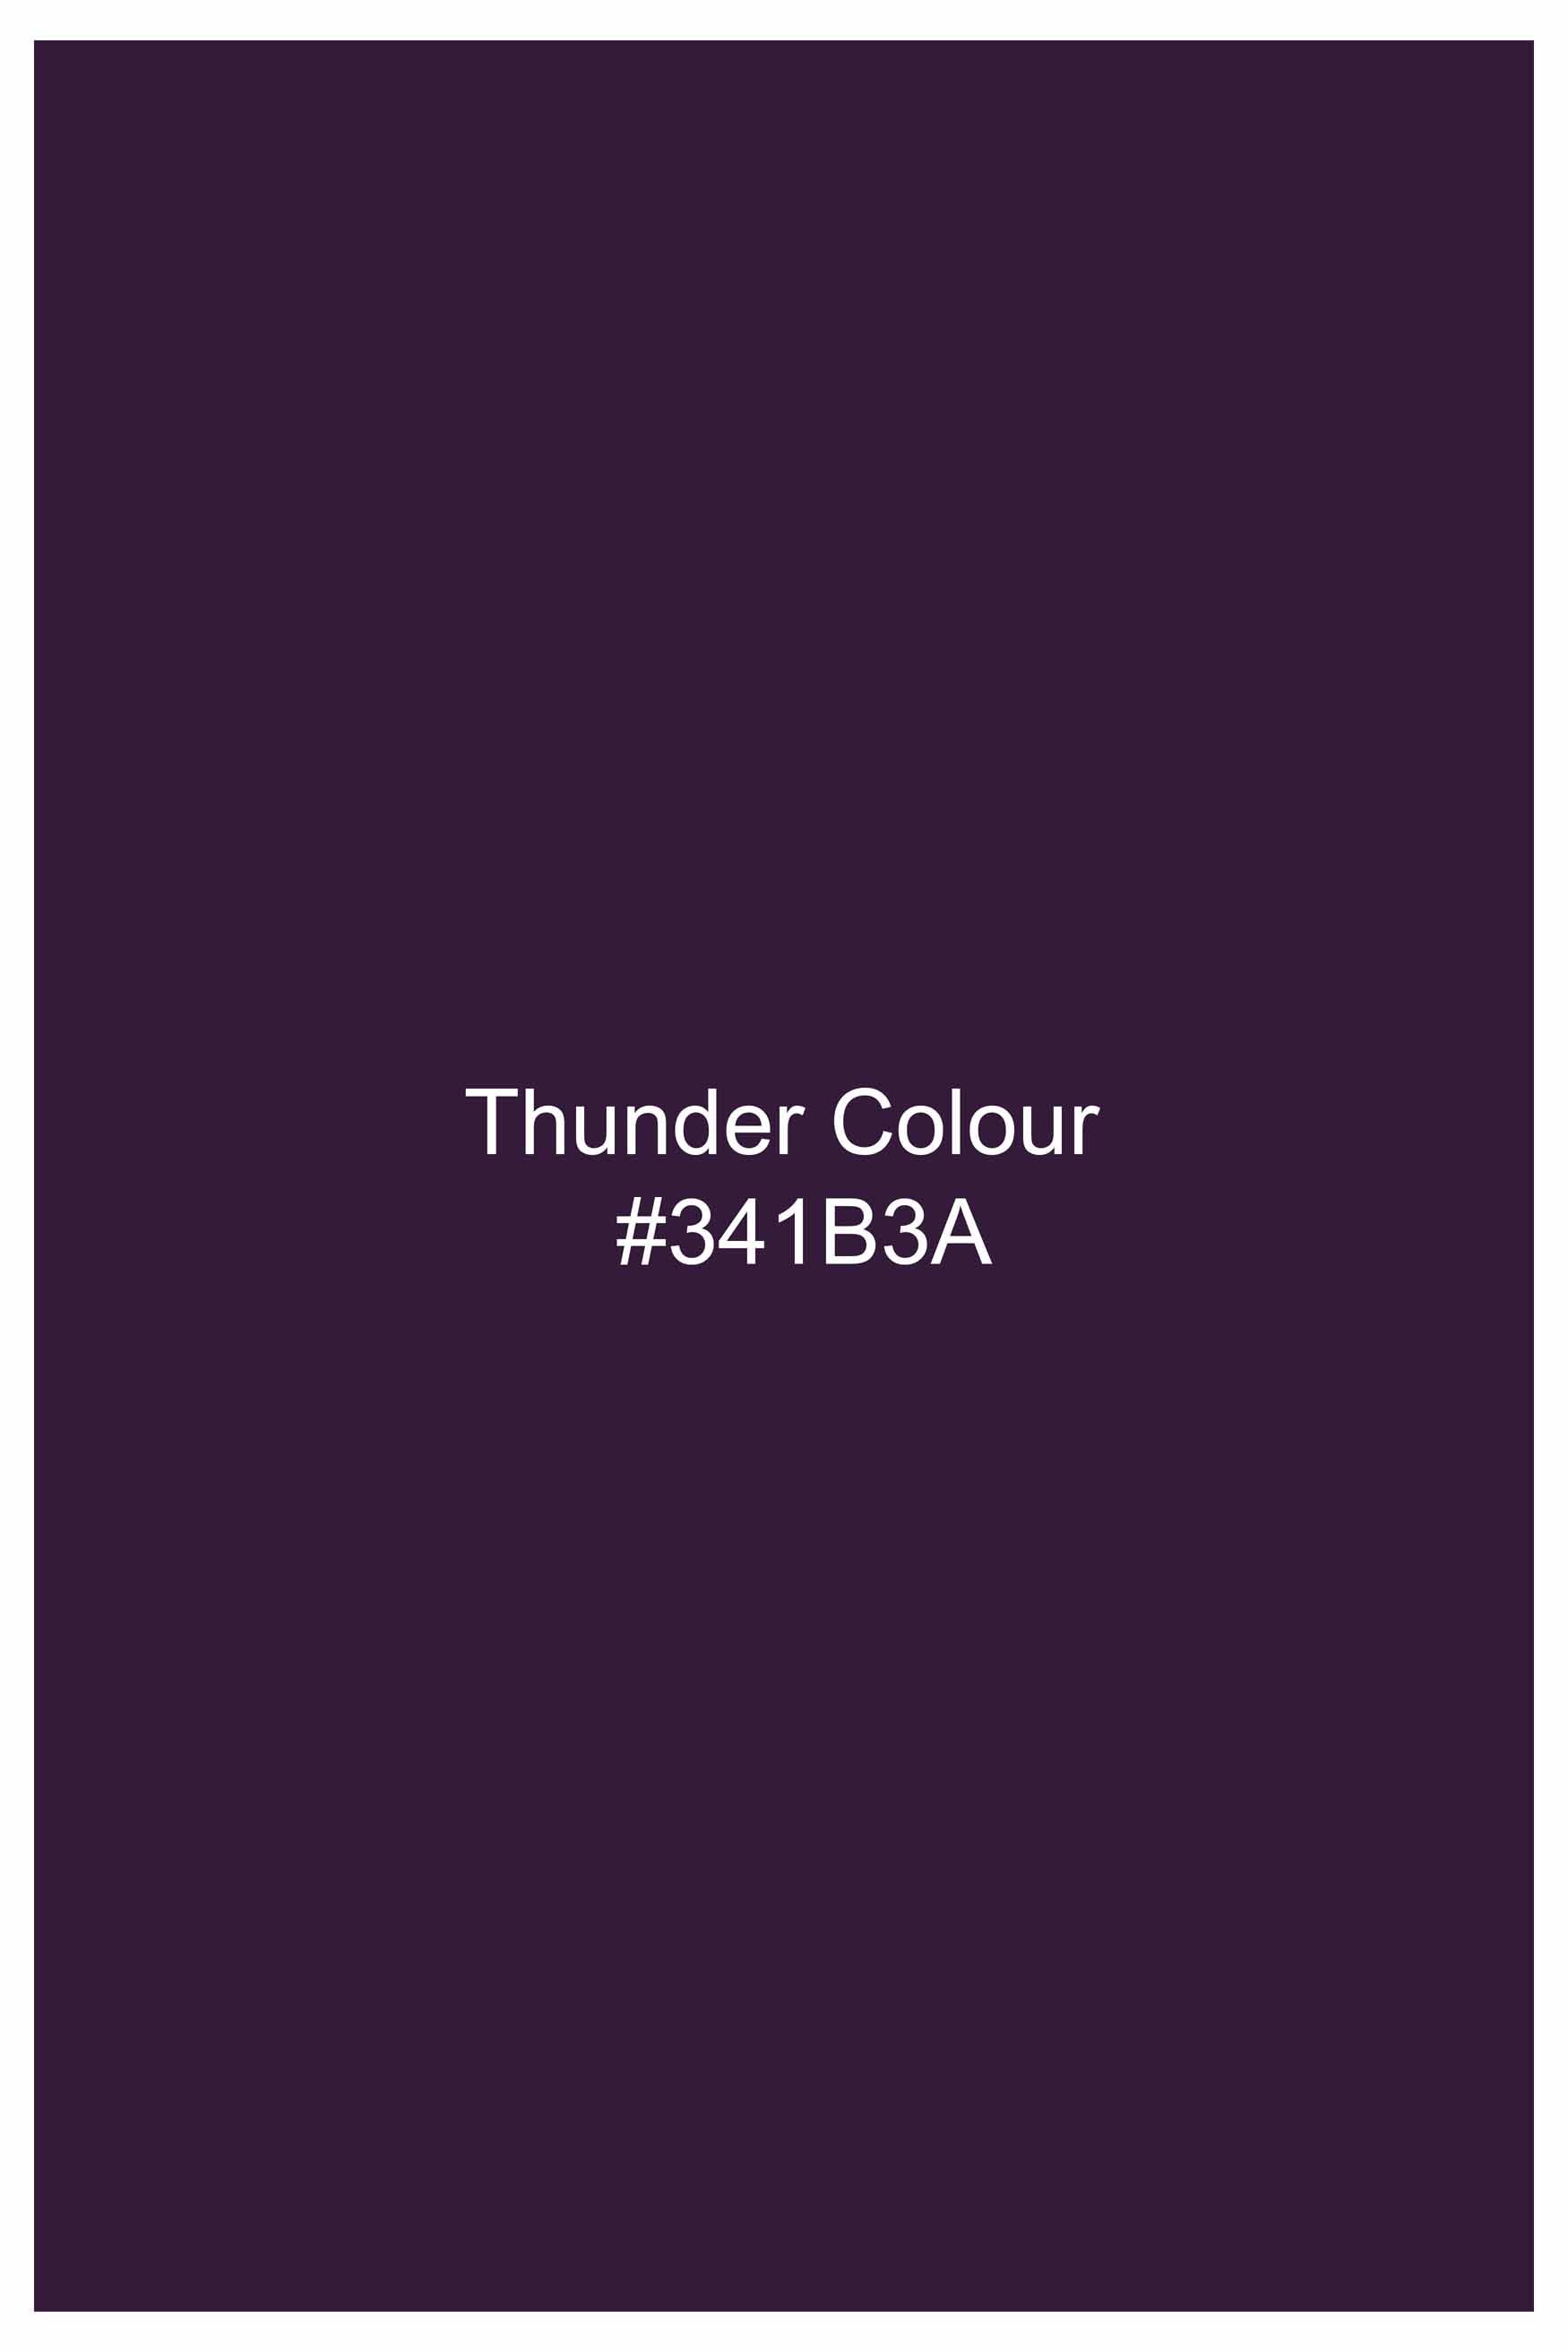 Thunder Purple Subtle Sheen Super Soft Premium Cotton Shirt